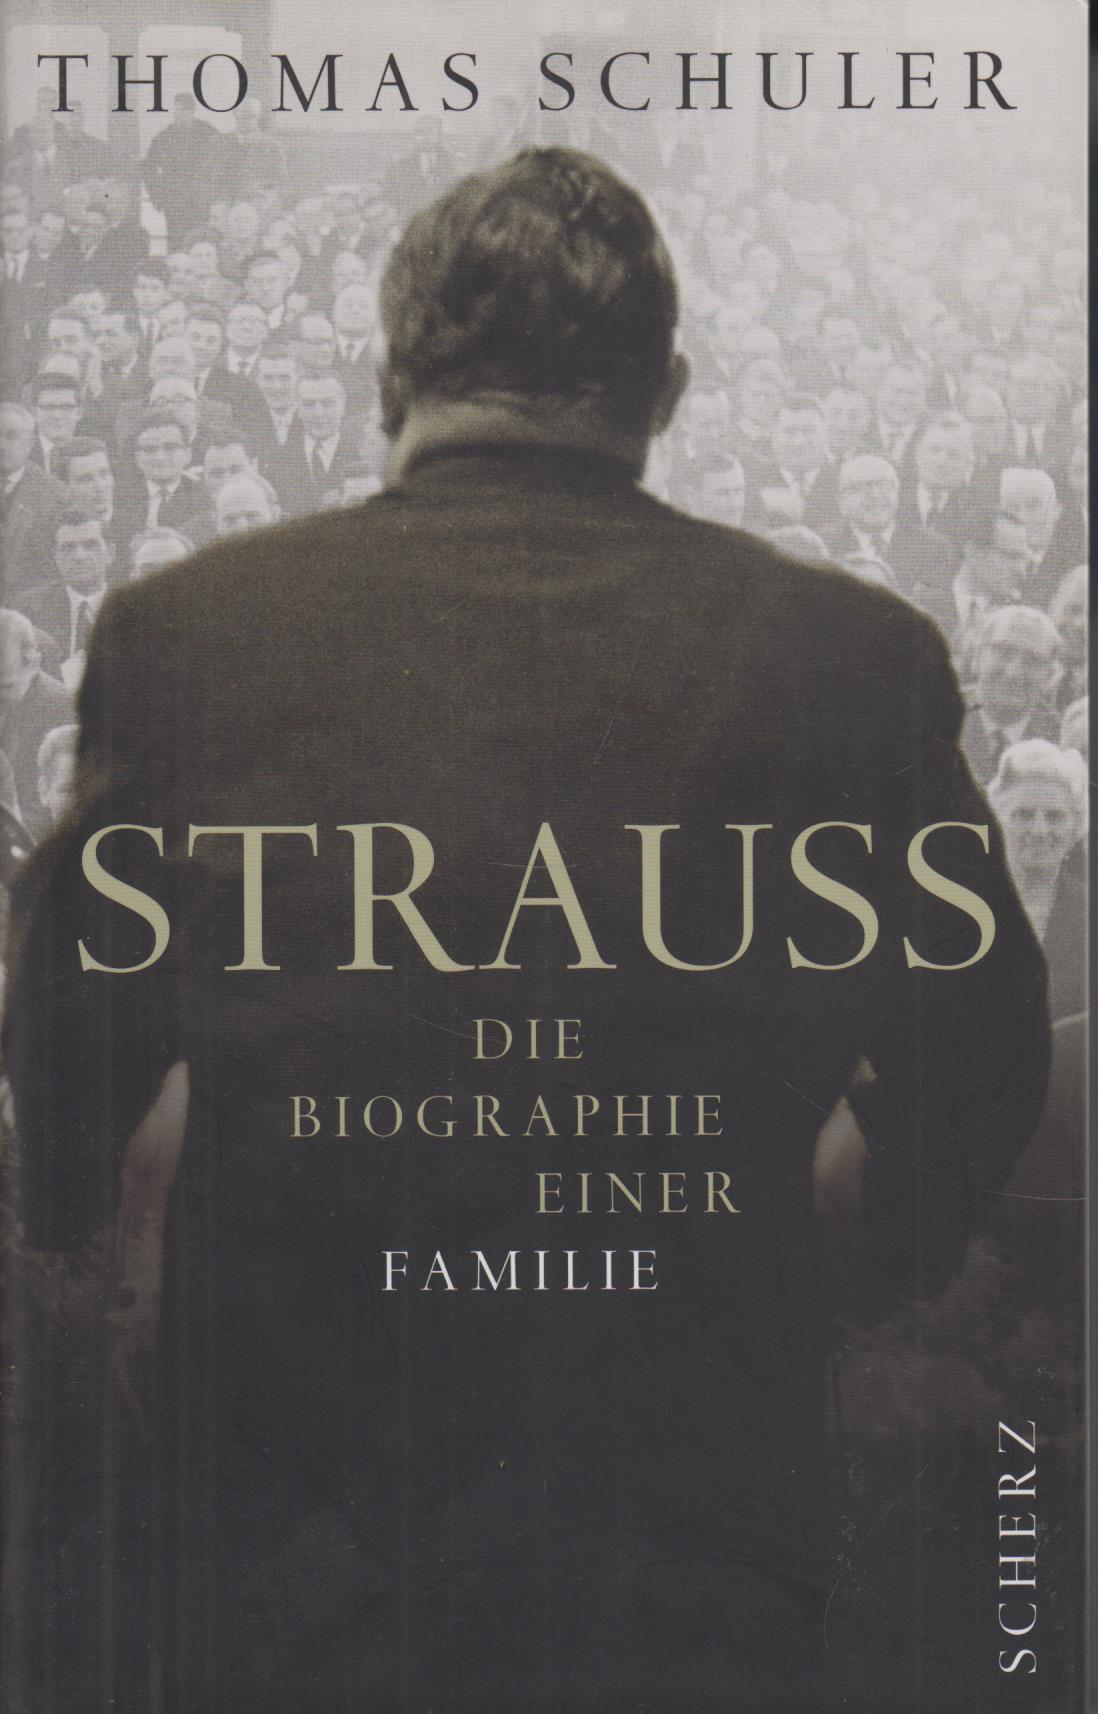 Strauss Die Biographie einer Familie - Schuler, Thomas